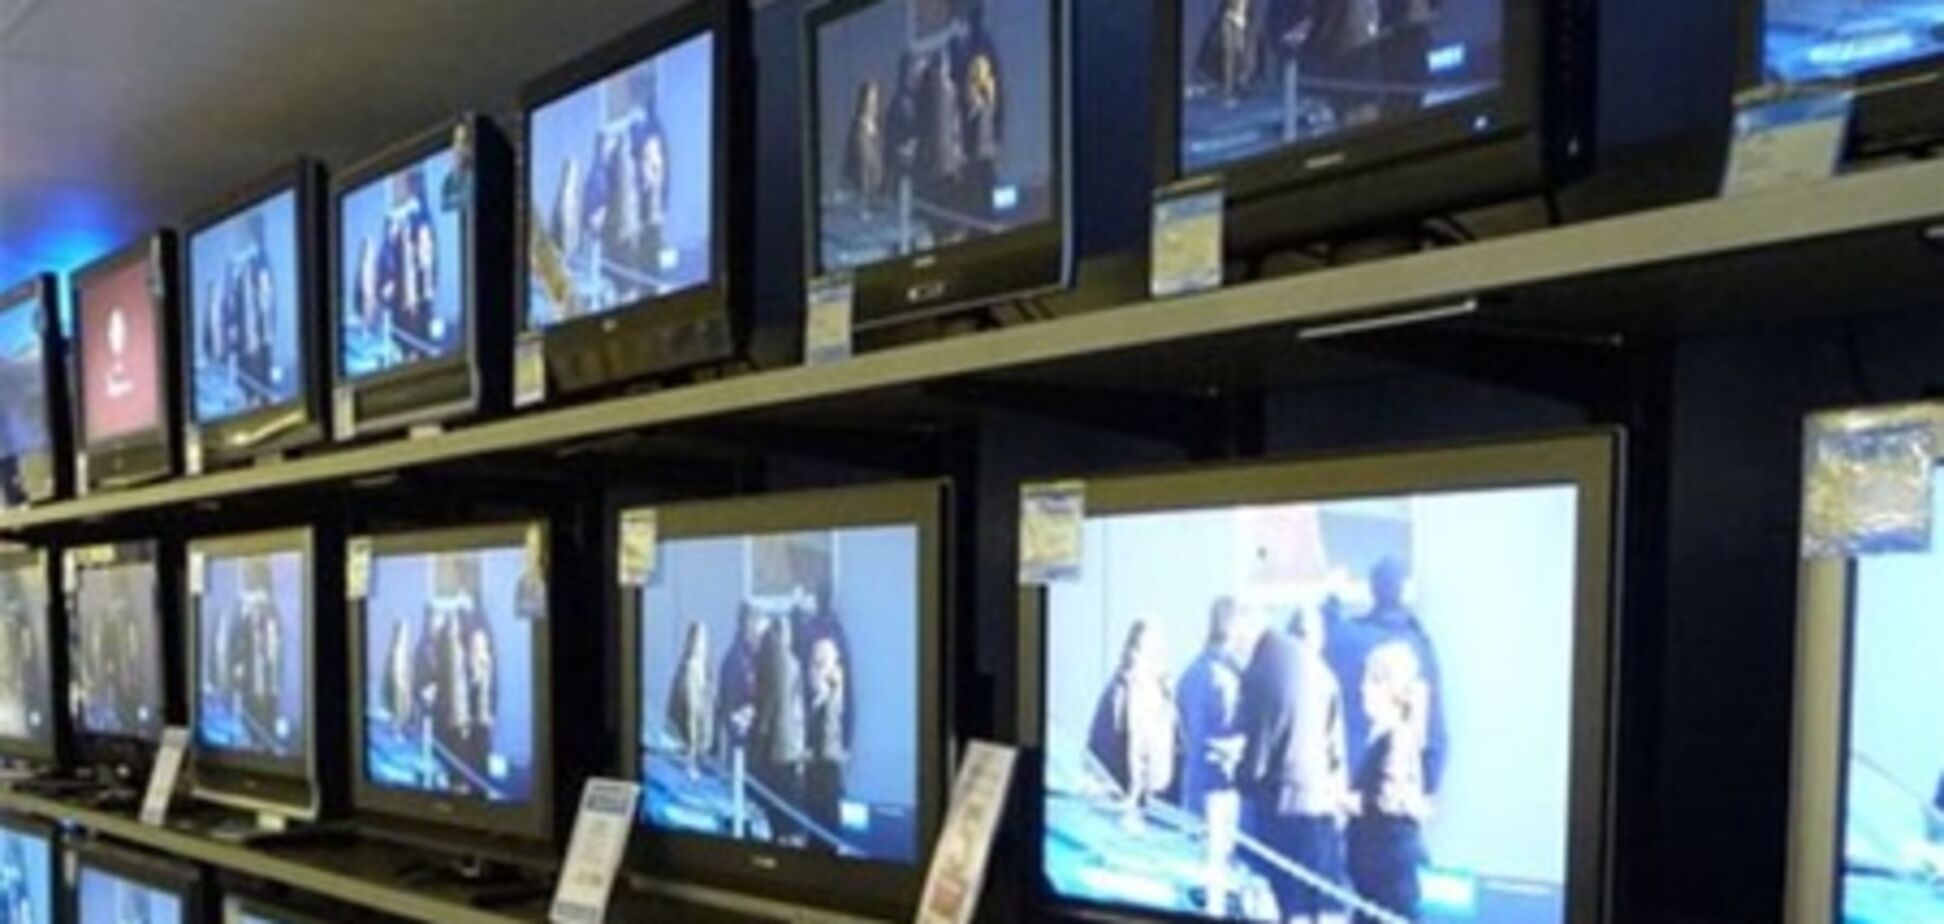 Украинское ТВ не станет полностью русскоязычным, заверили у Януковича